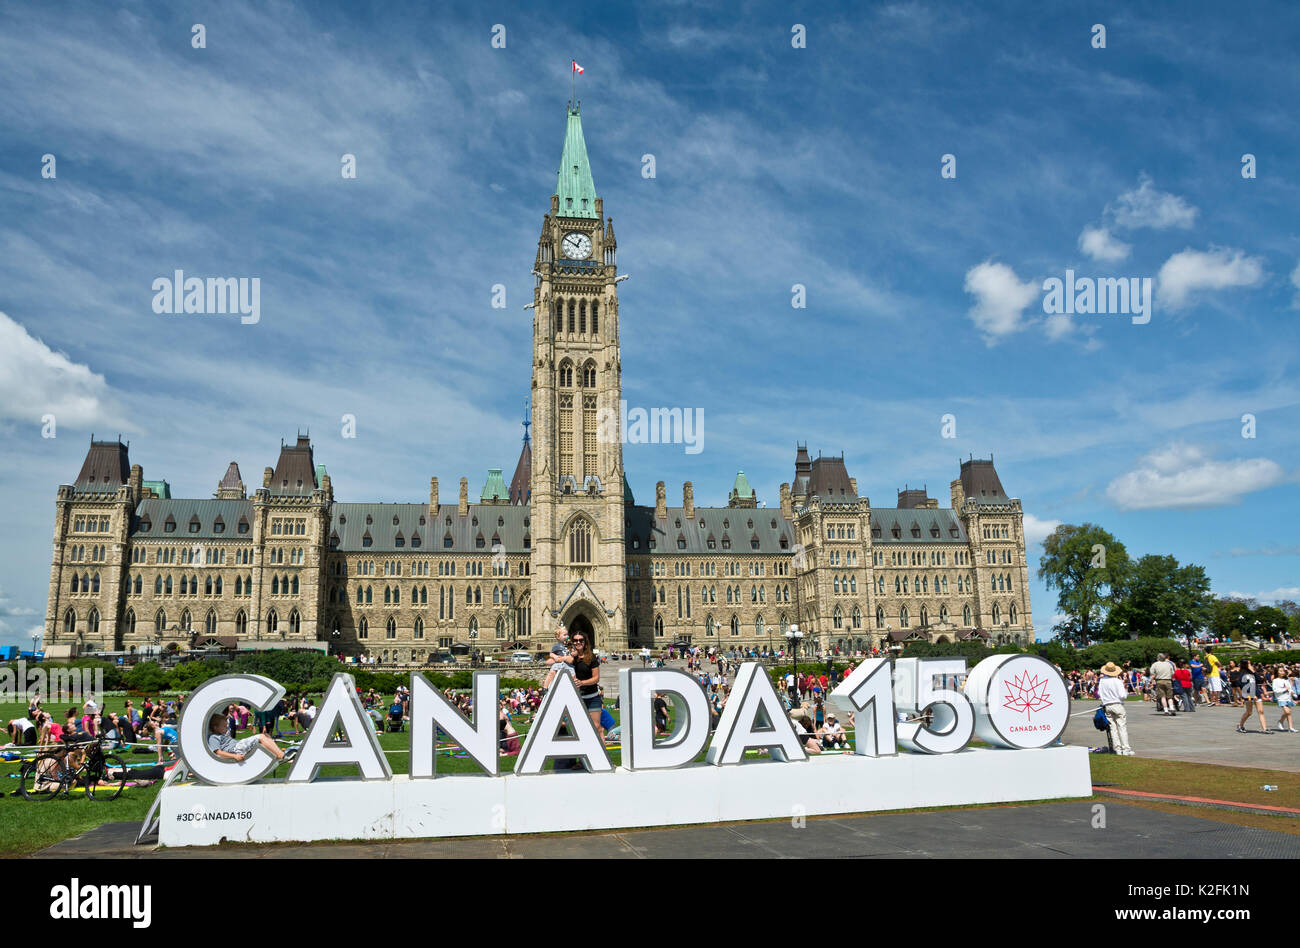 Kanada 150 Zeichen Auf Dem Parliament Hill In Ottawa Ontario Parlament Gebaude In Der Hauptstadt Stockfotografie Alamy